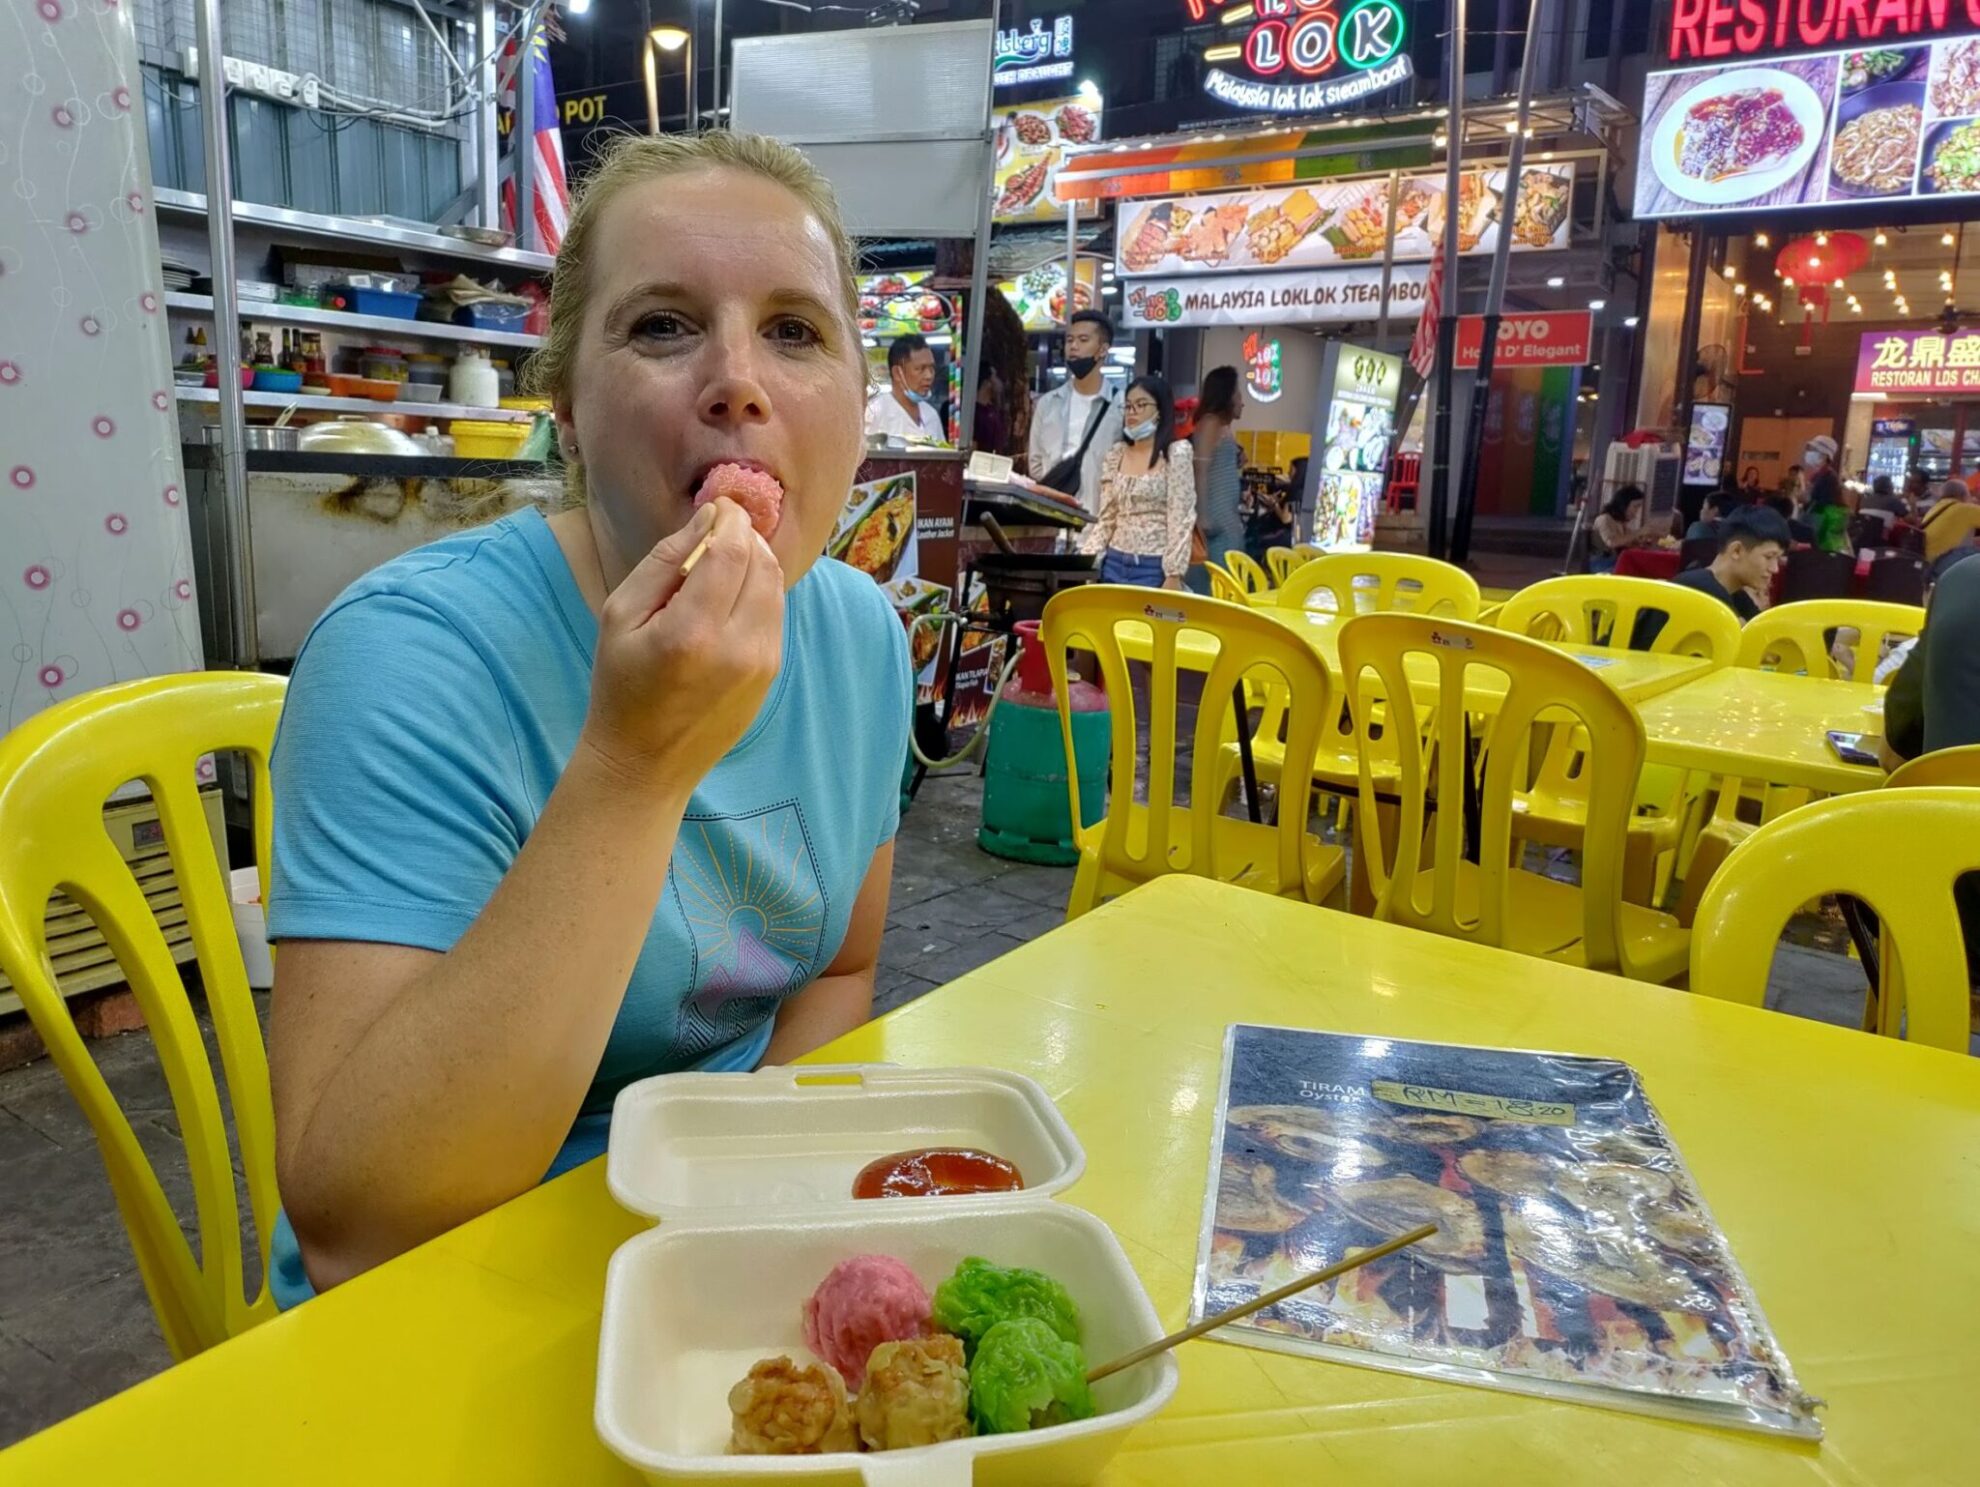 Kuala Lumpur | Jalan Alor | Dumplings